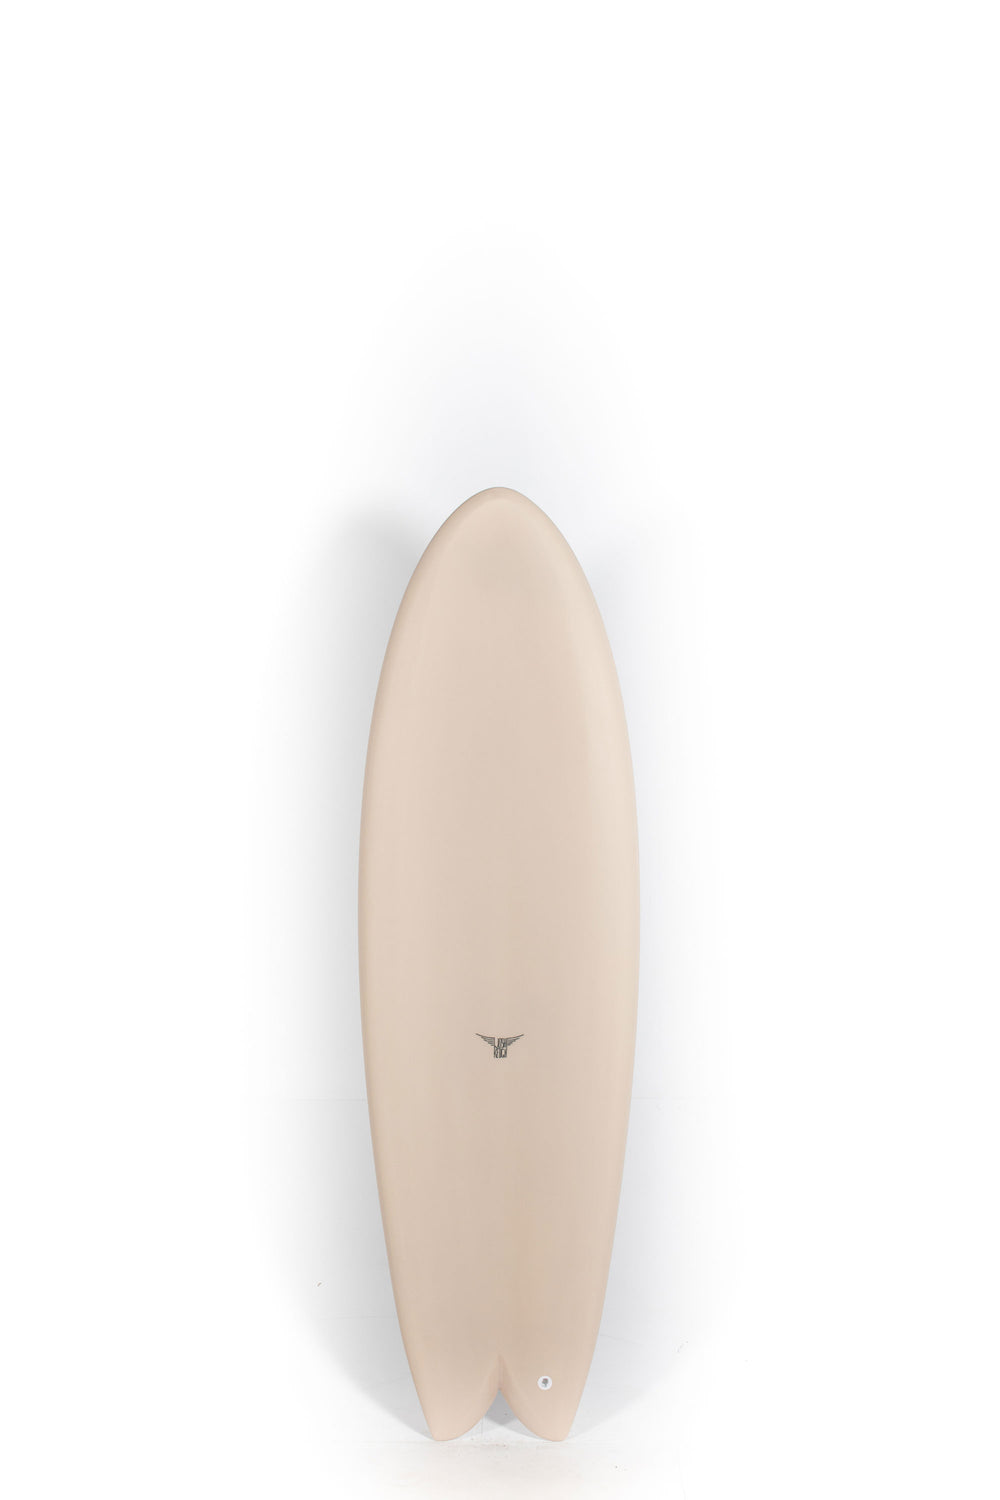 Pukas Surf Shop - Joshua Keogh Surfboard - MONAD by Joshua Keogh - 5'11